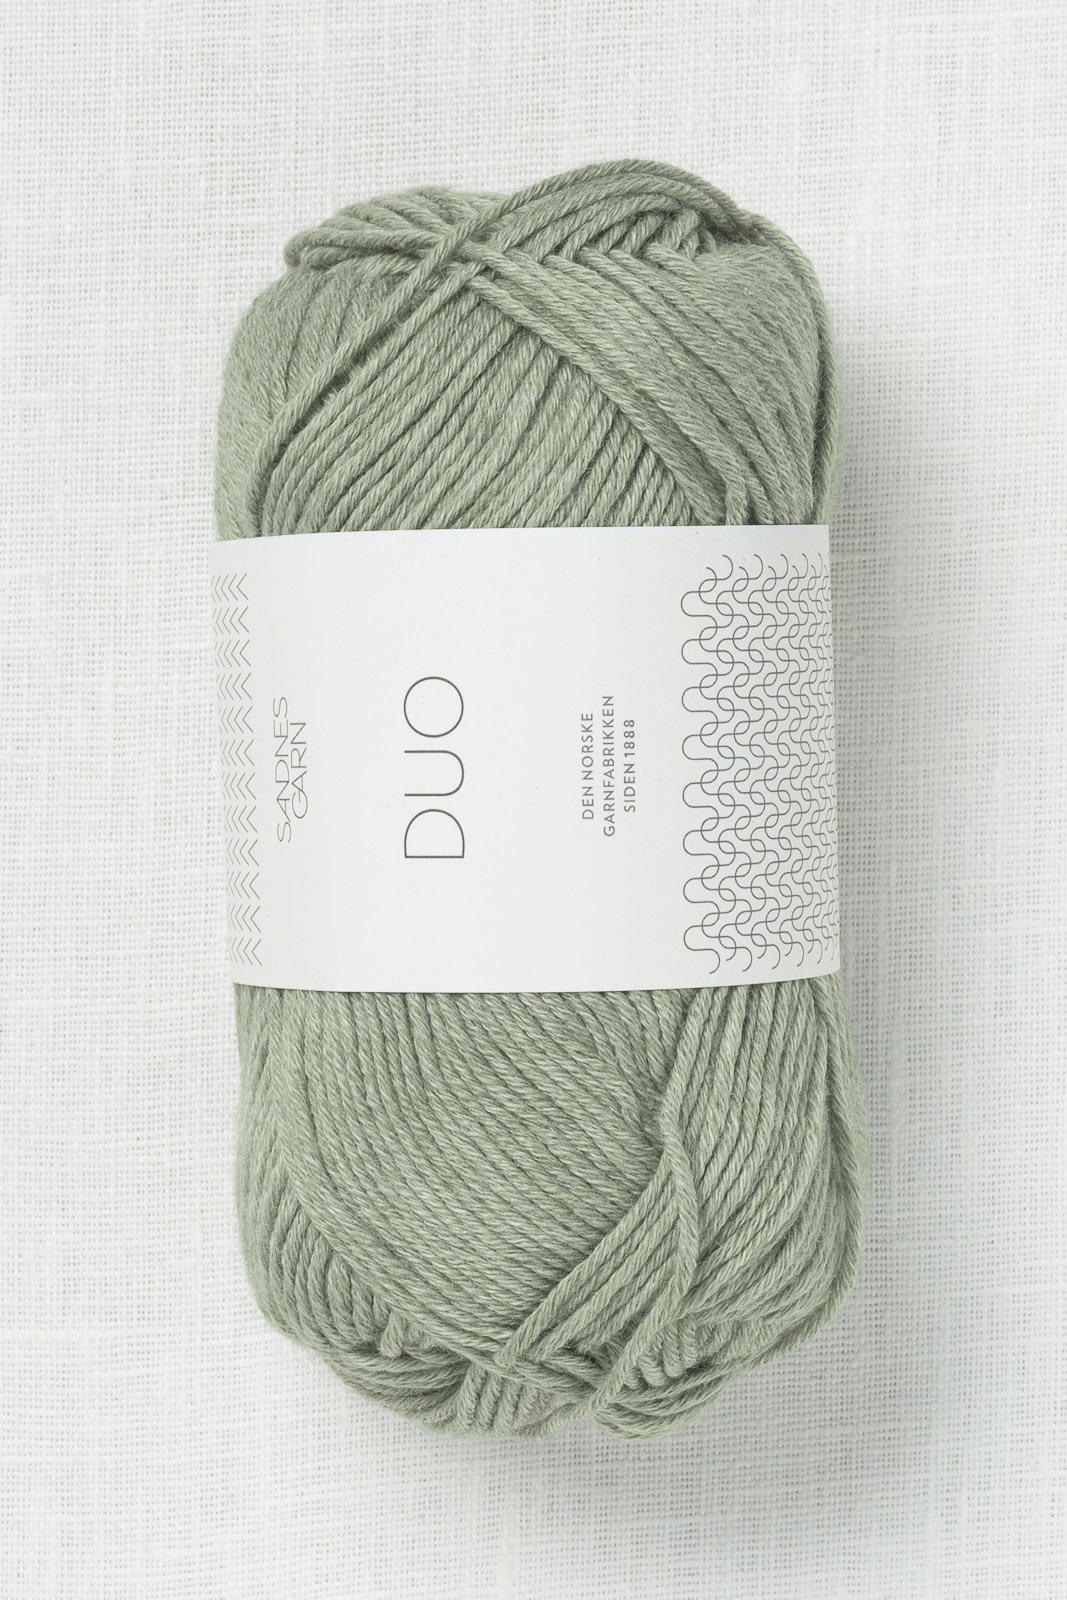 snigmord Luscious Mod Sandnes Garn Duo 8521 Dusty Light Green - Wool and Company Fine Yarn